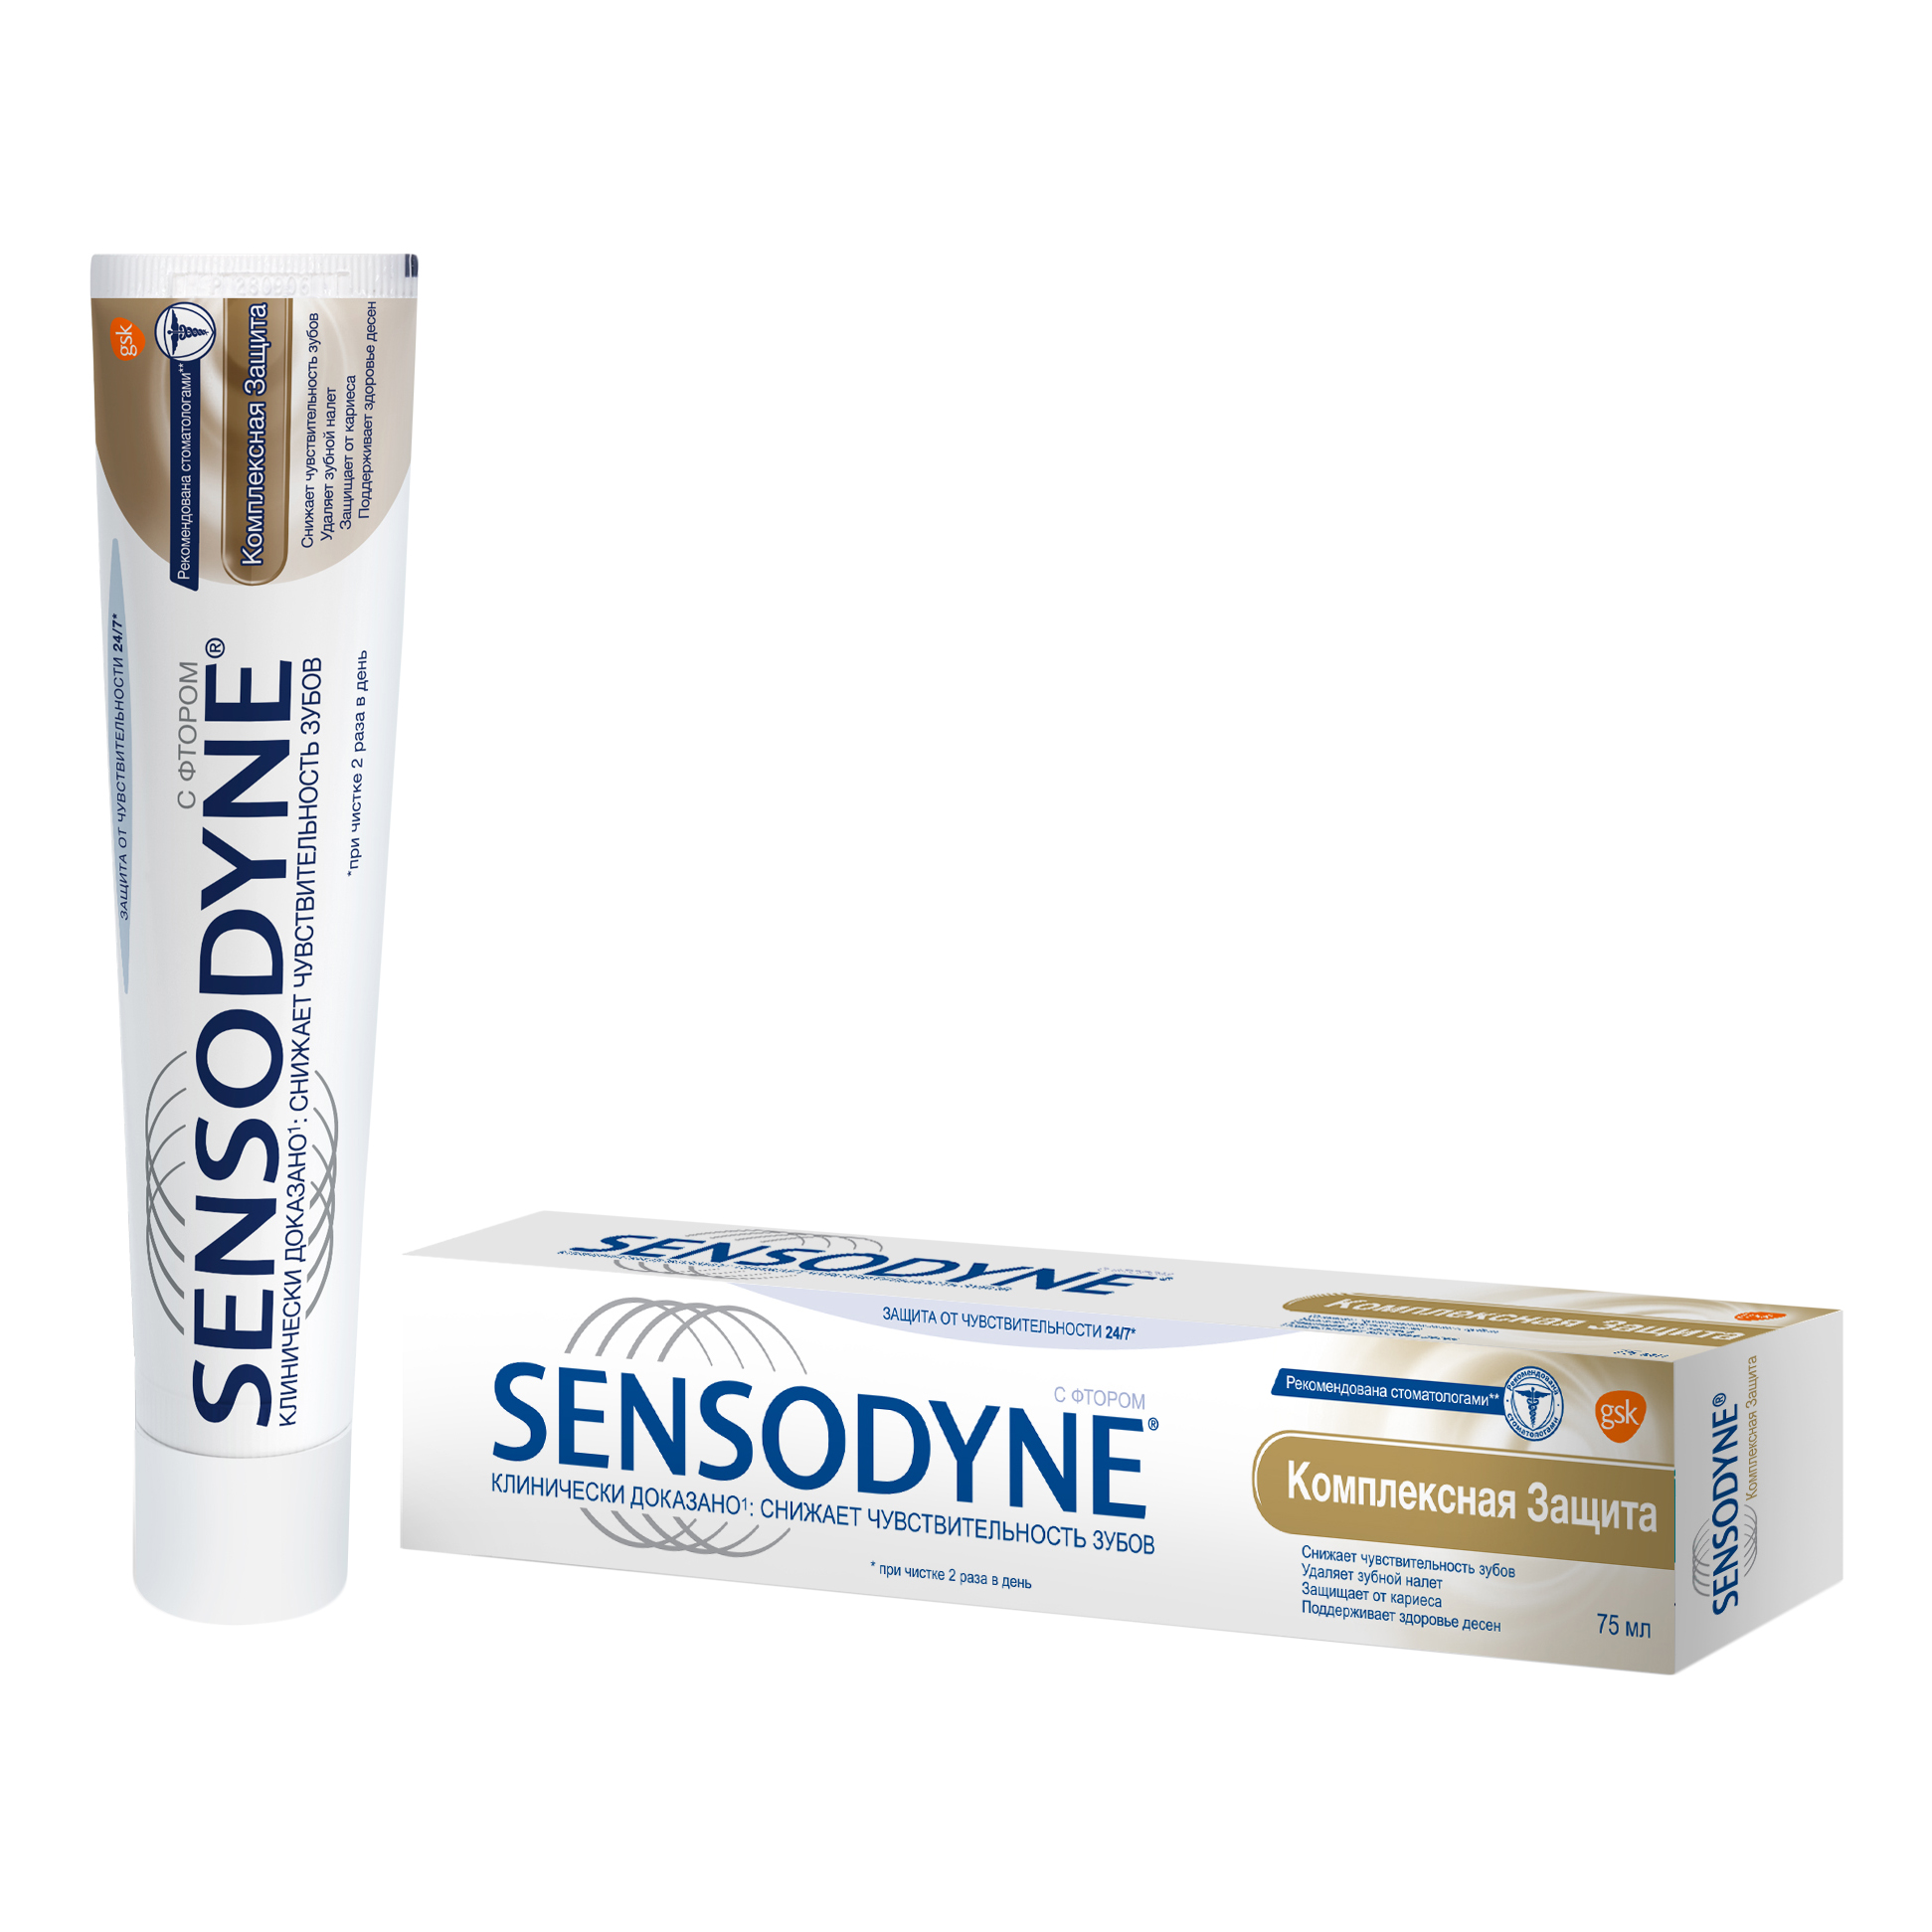 Купить Зубная паста Sensodyne Комплексная Защита, для чувствительных зубов, 75 мл, зубная паста PNS7087700